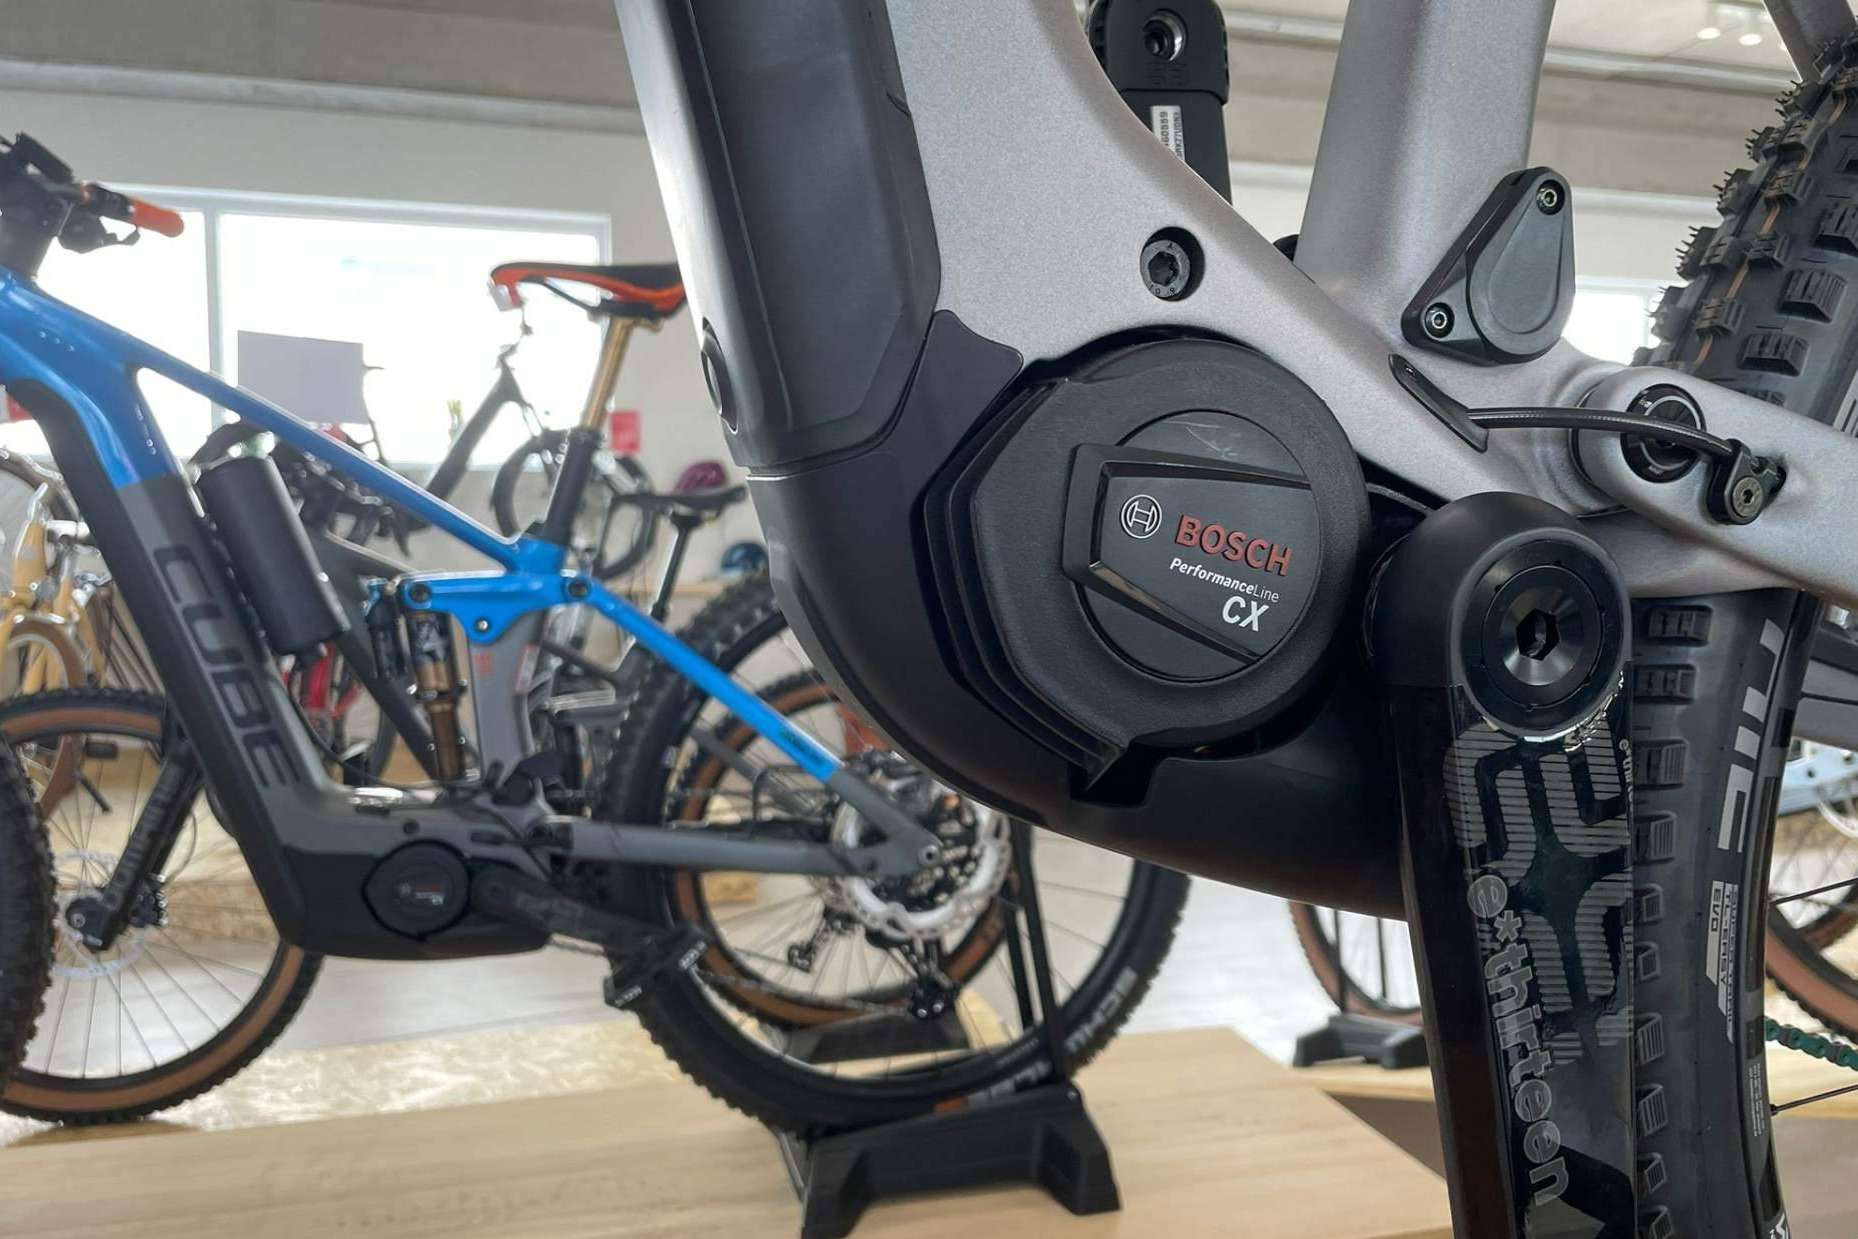  Motores ideales de bicicletas eléctricas, cómo saber cuál elegir para la ebike 